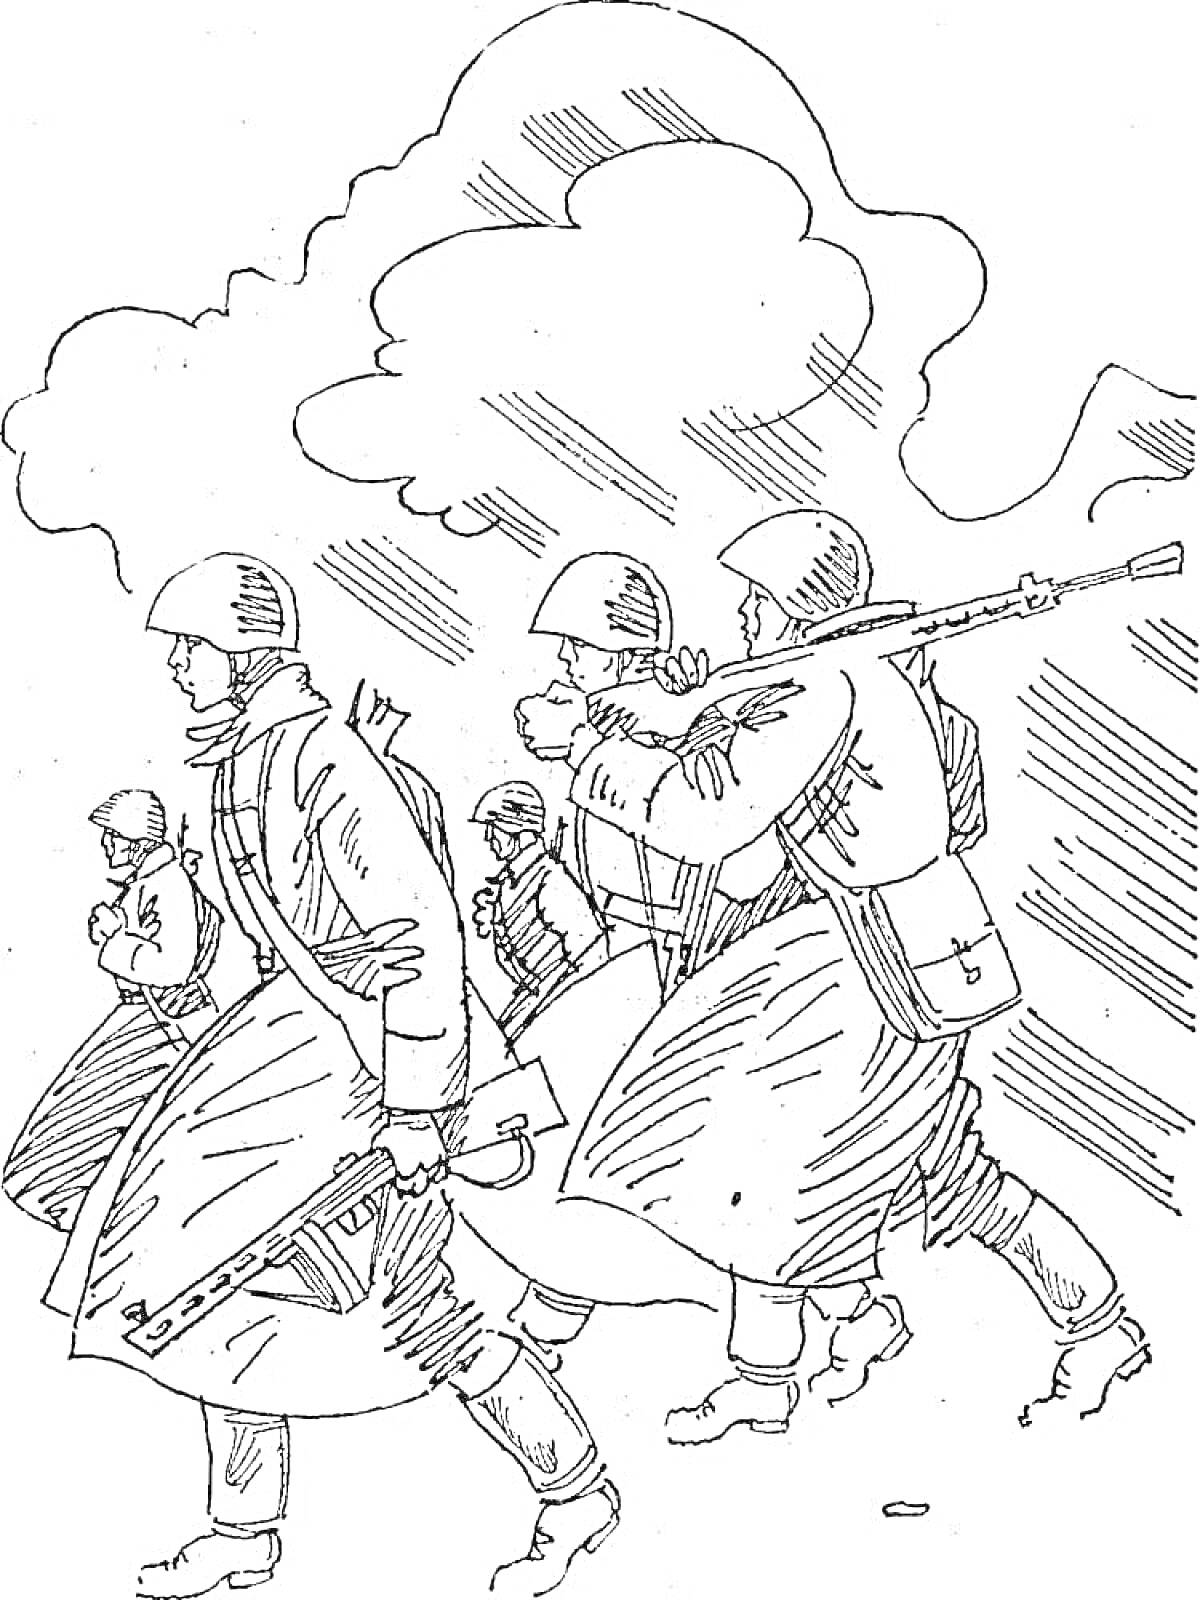 Солдаты на марше с оружием, на фоне дыма